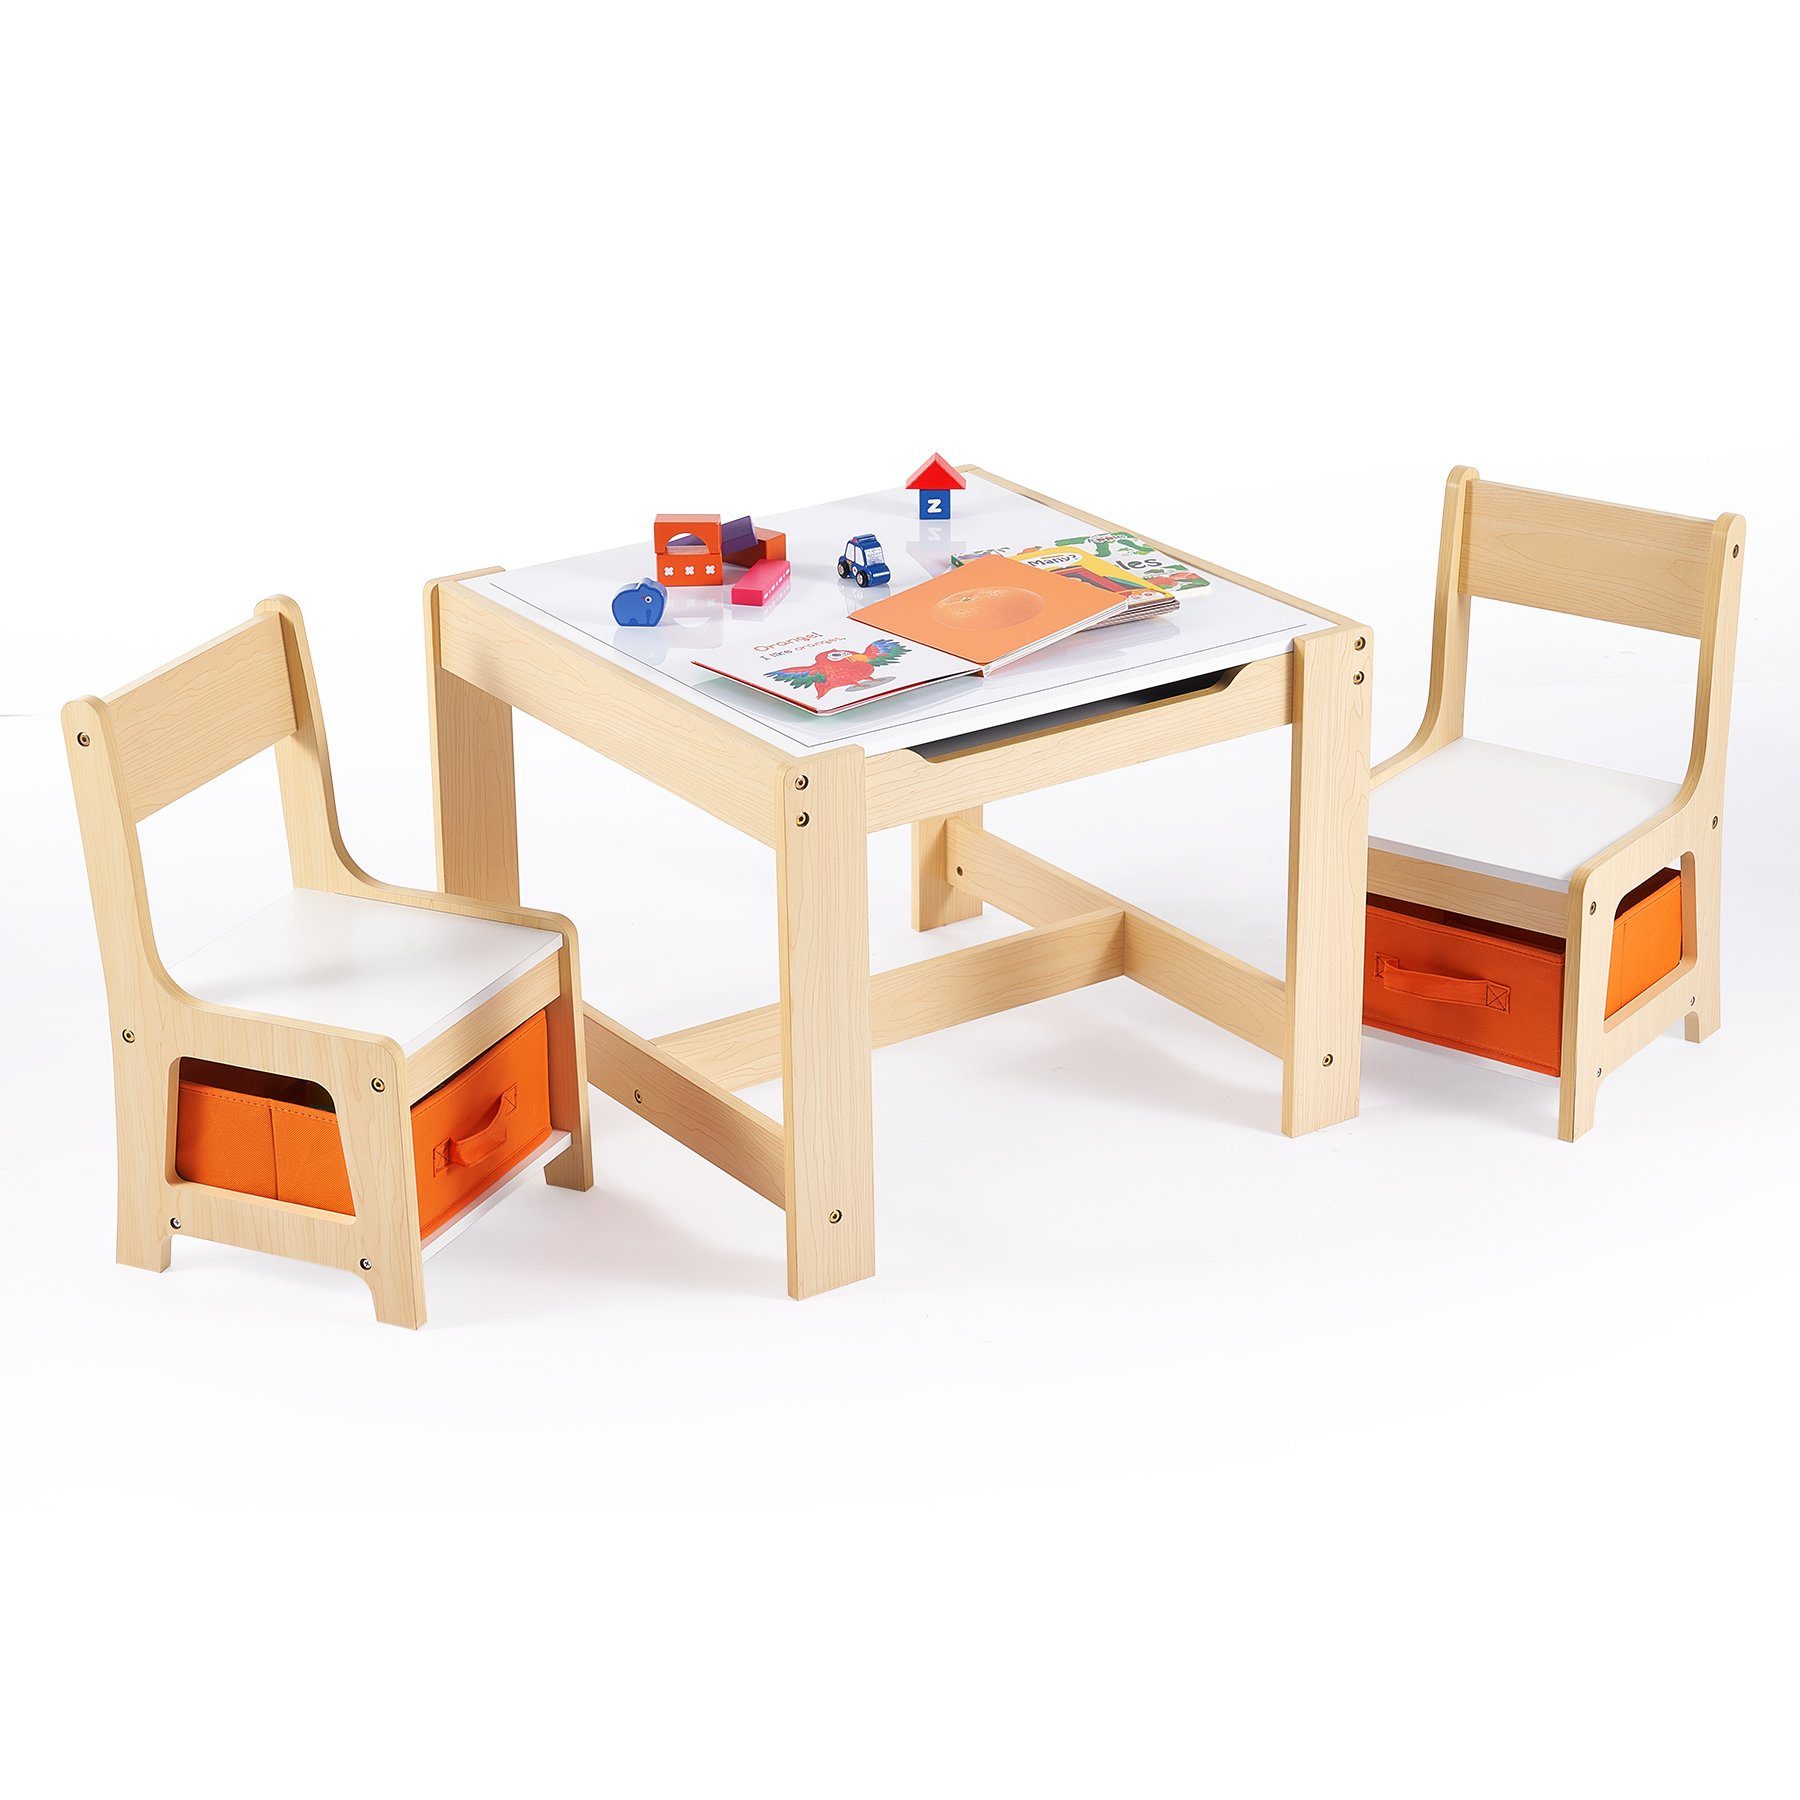 Crenex Kindersitzgruppe, Sichere Kindersitzgruppe - Der  Mehrzweck-Schreibtisch trägt bis zu 82kg, während jeder Stuhl sicher bis zu  100kg trägt und verfügt über eine robuste ASTM-zertifizierte Konstruktion  online kaufen | OTTO